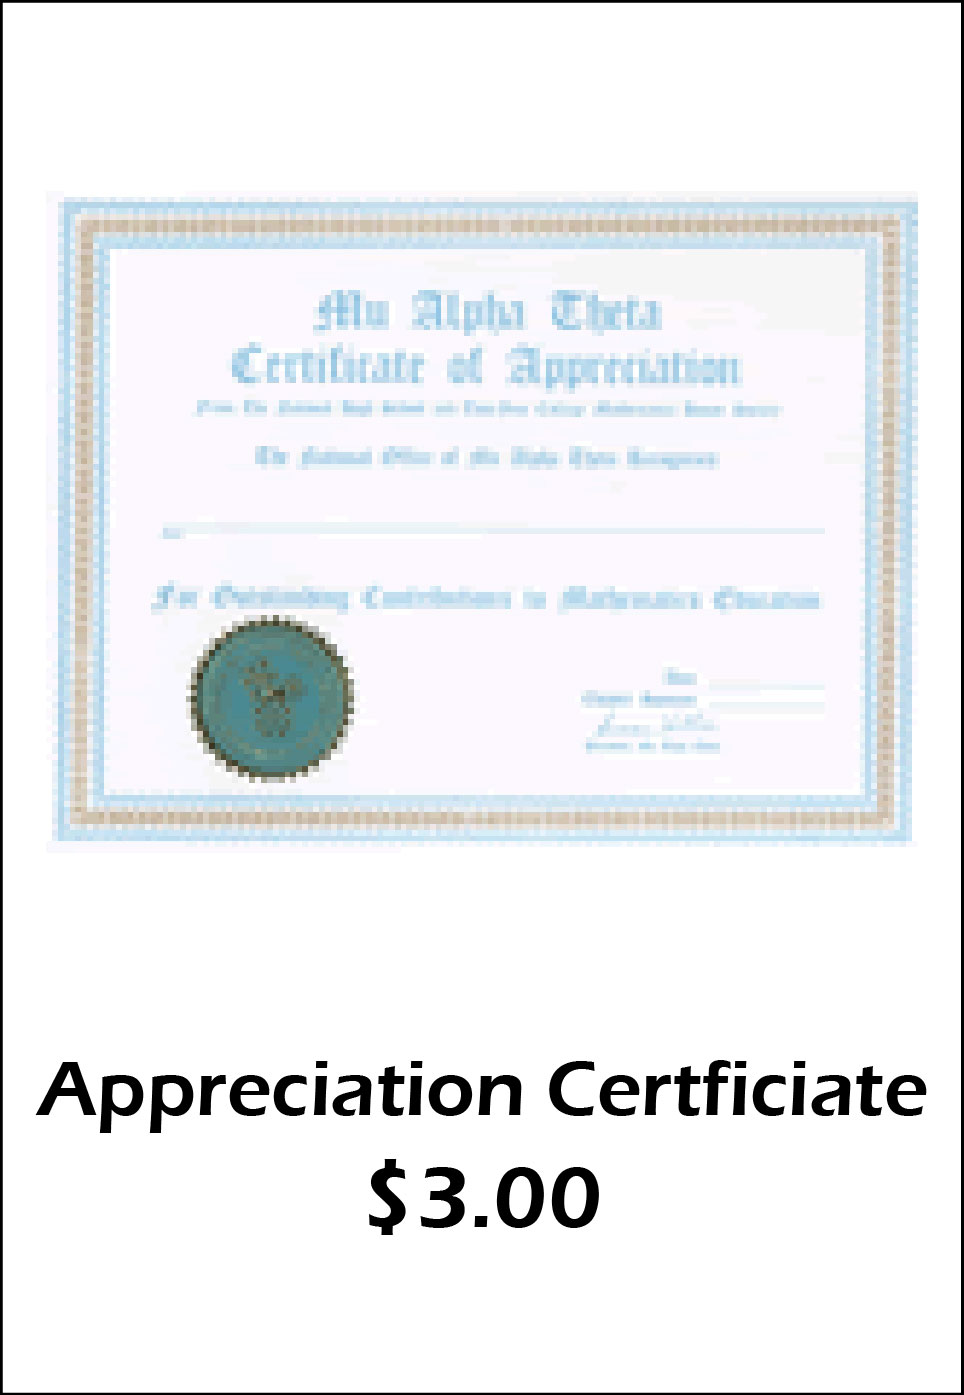 MAT Appreciation Certificate - $3.00